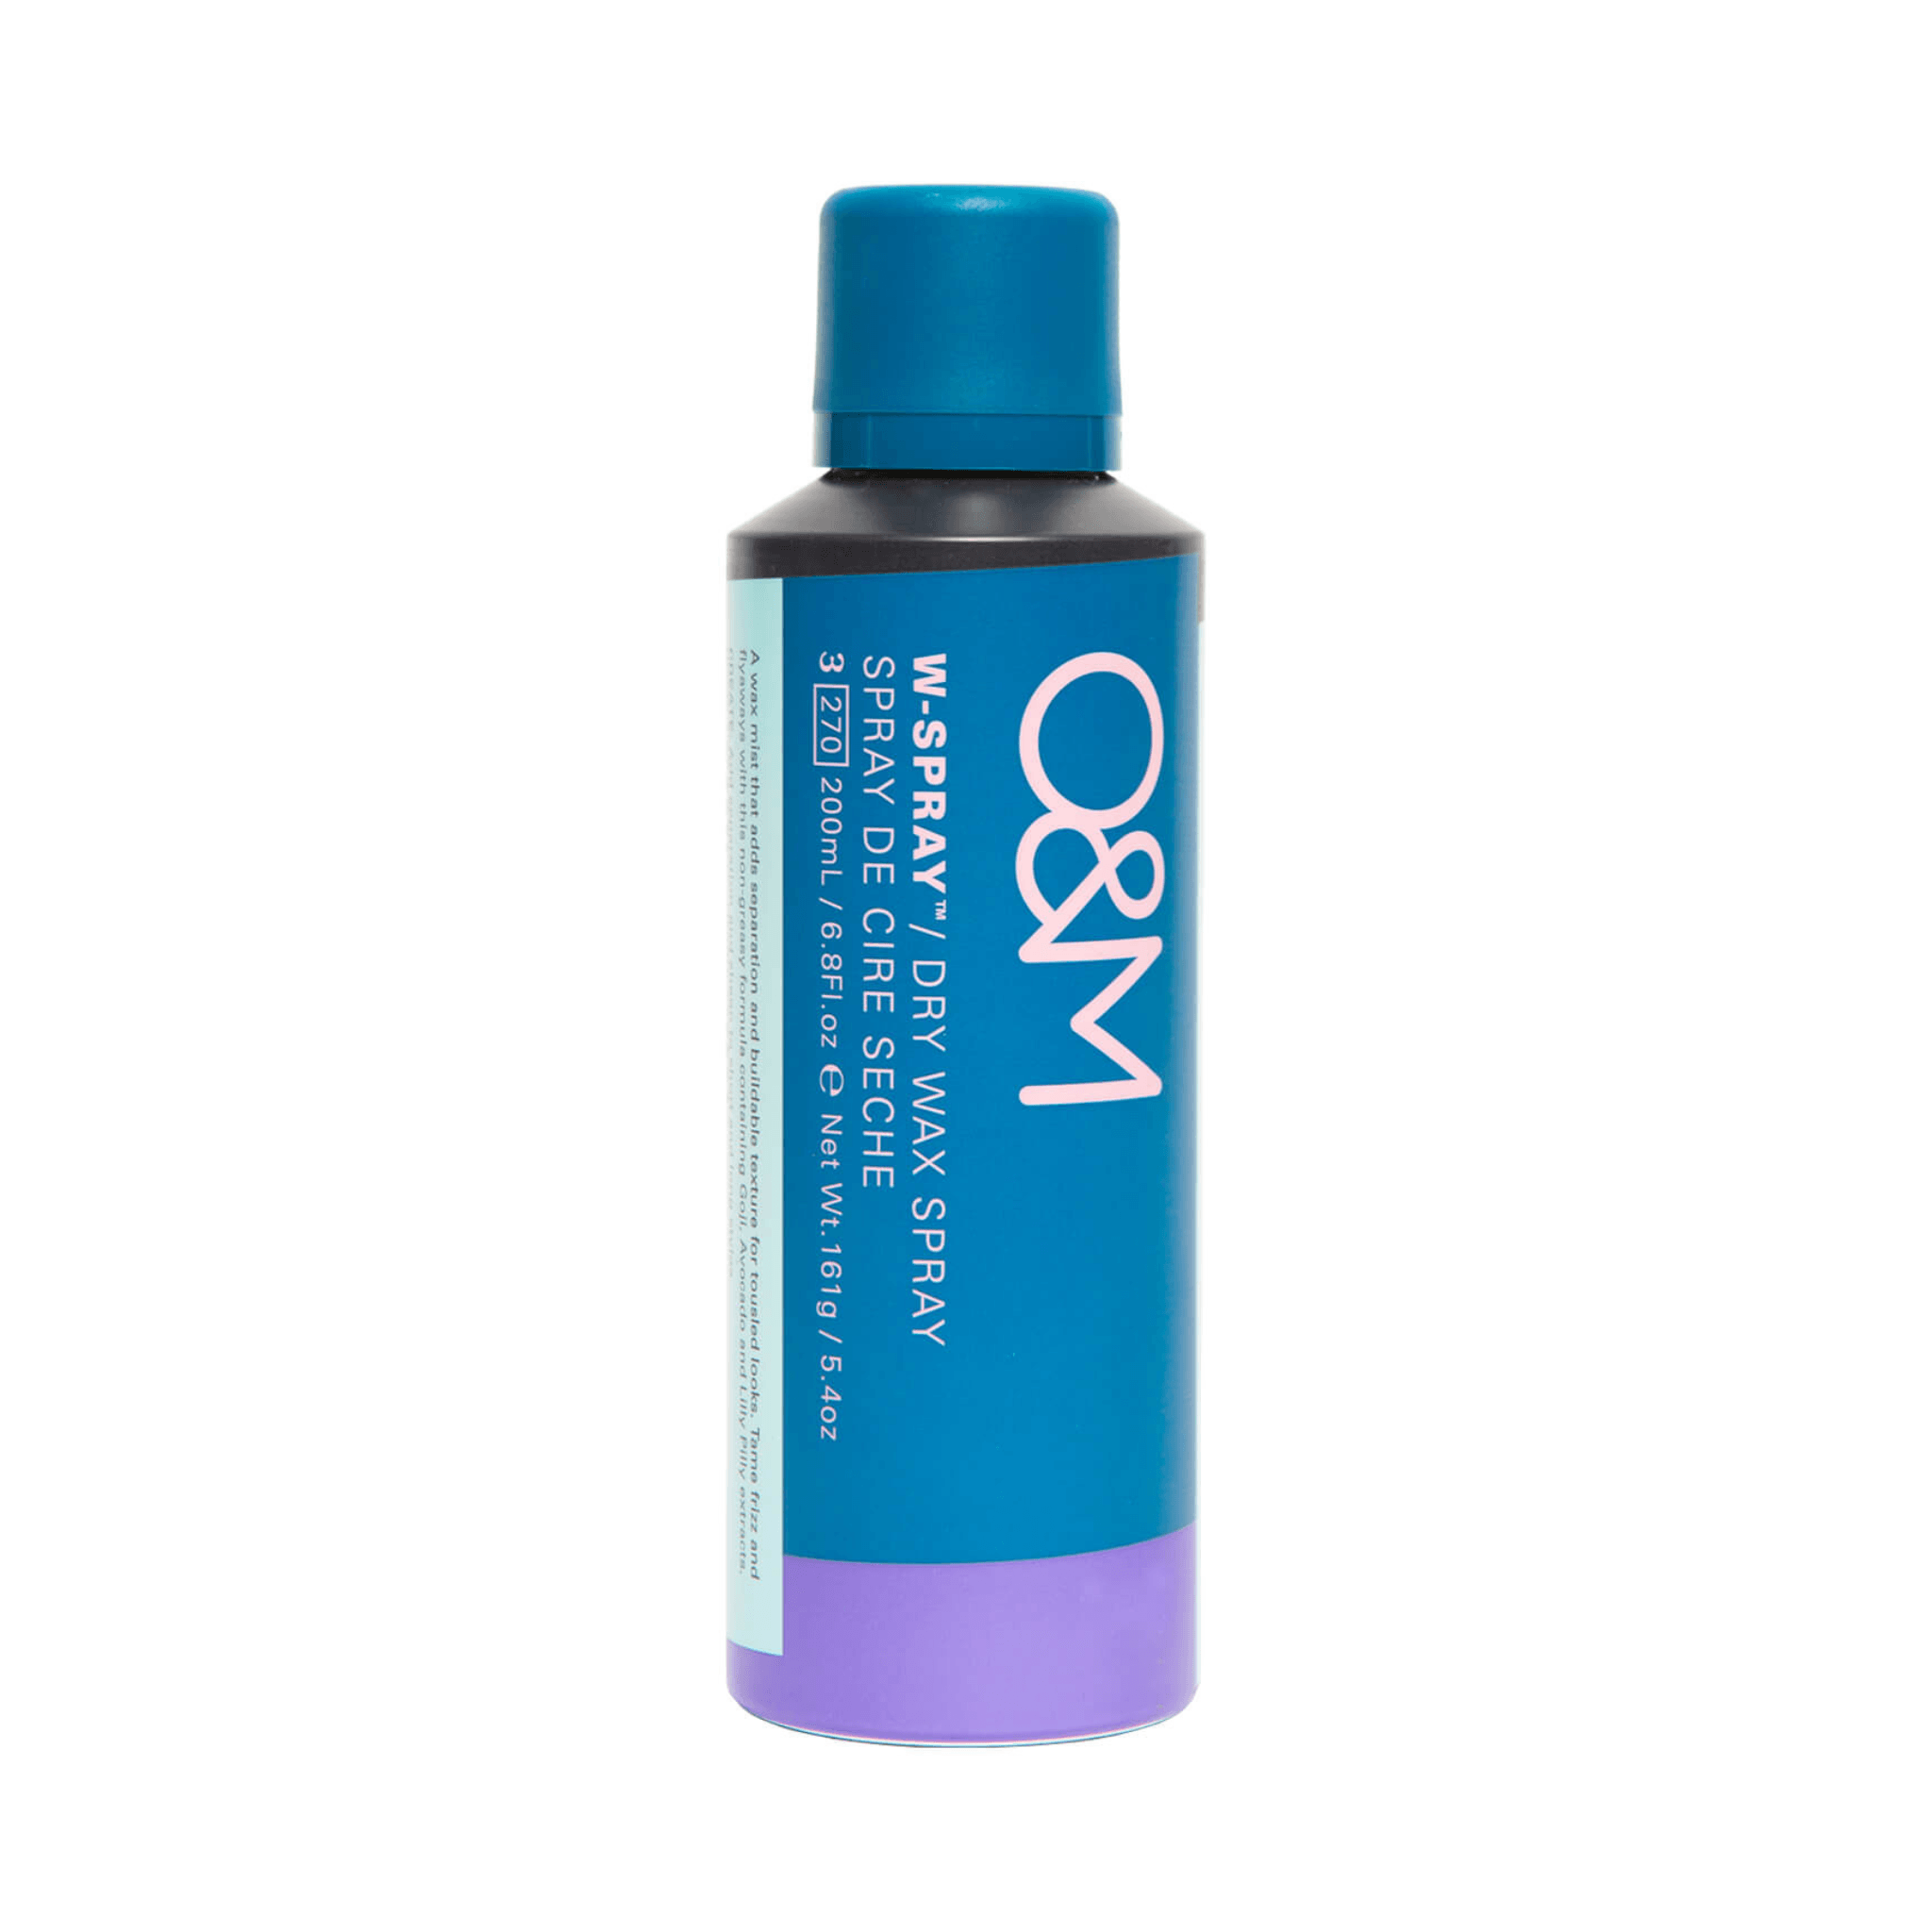 O&M. Spray de Cire Sèche W-Spray - 200 ml - Concept C. Shop